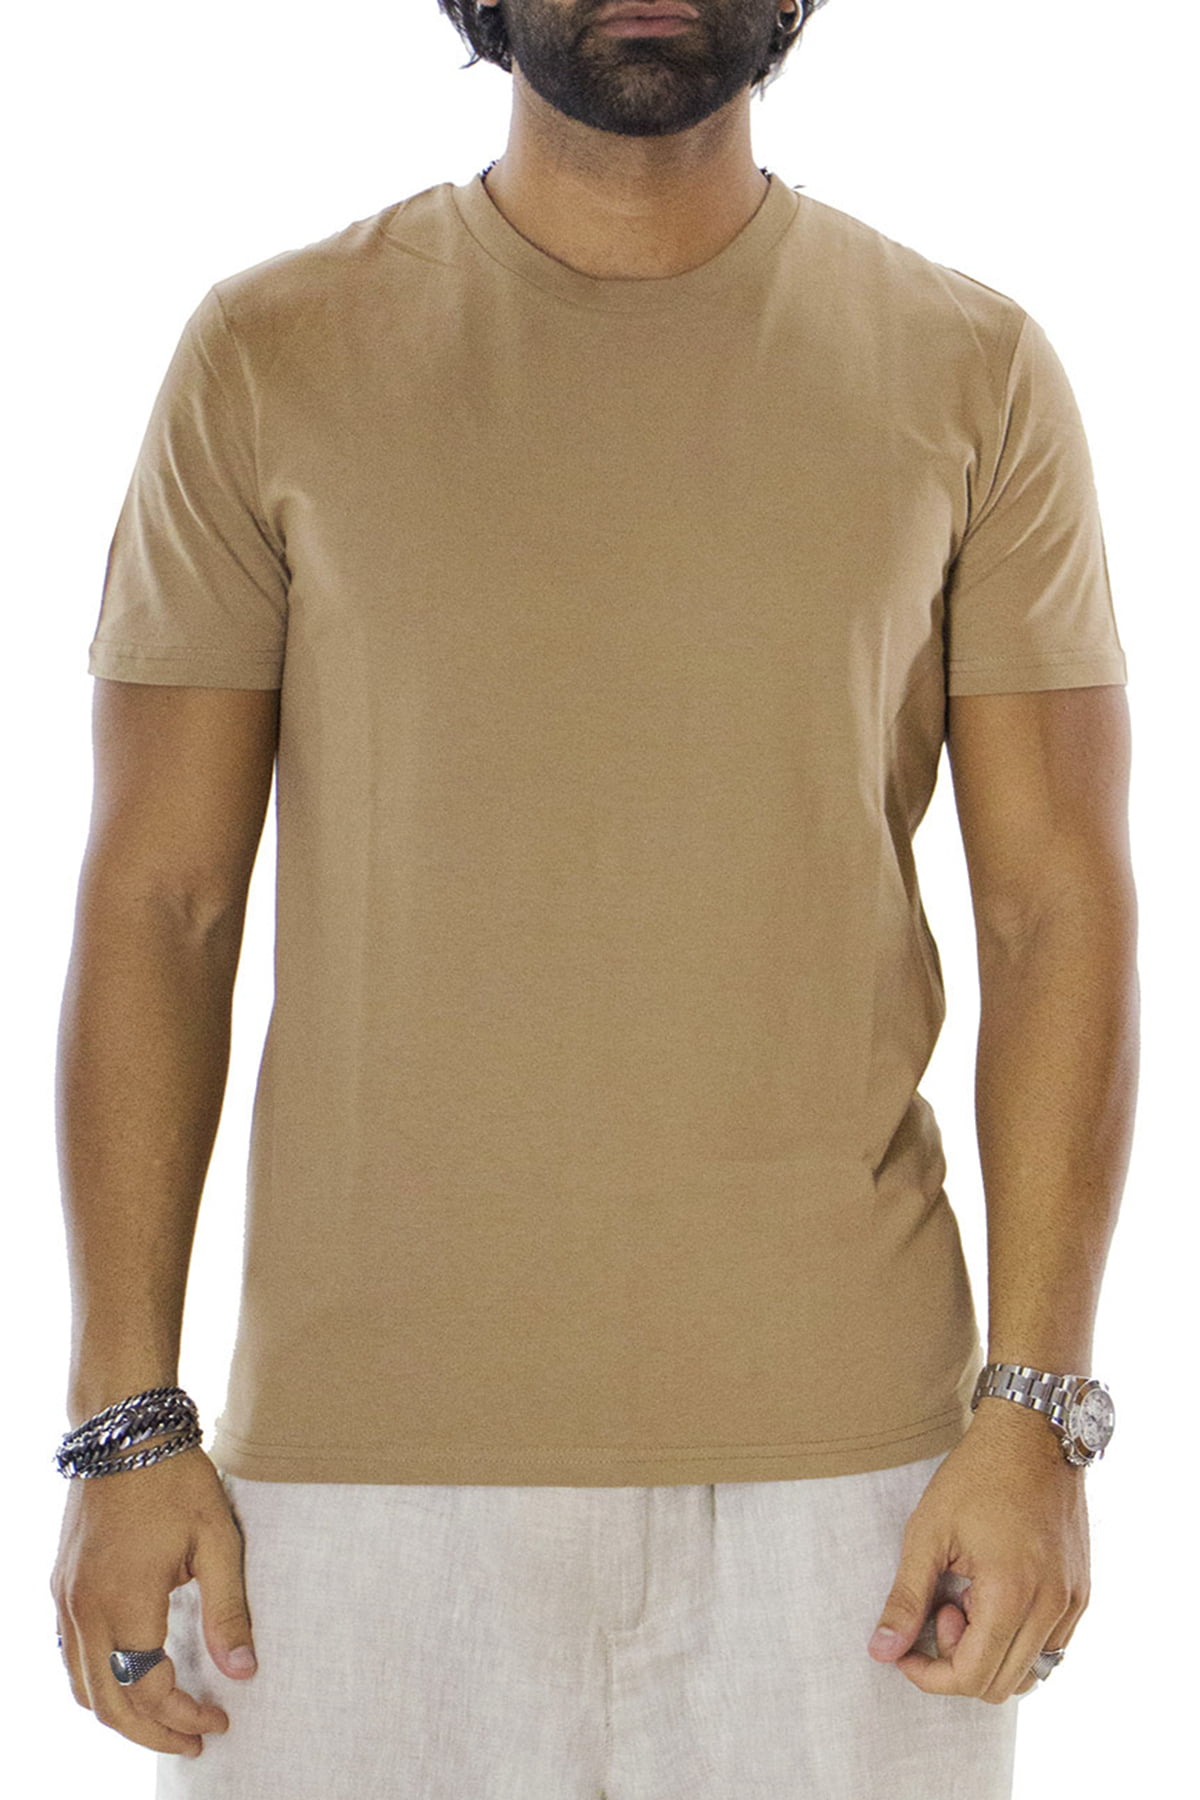 T-shirt da uomo in cotone organico tinta unita cammello regular fit elasticizzata girocollo